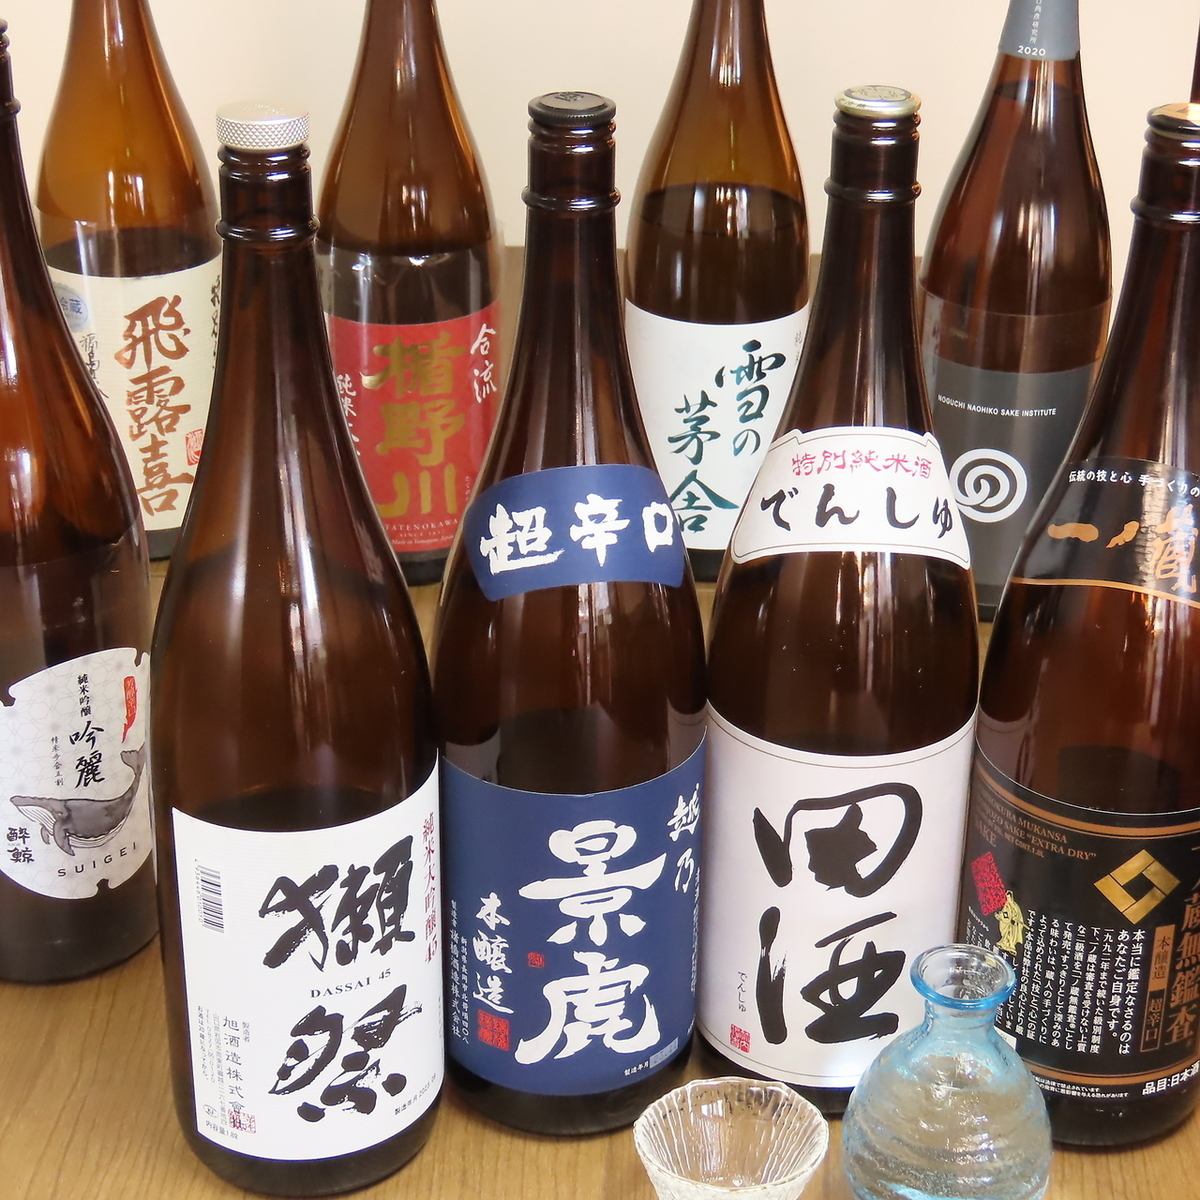 다양한 종류의 일본 술을 갖추고 있습니다!